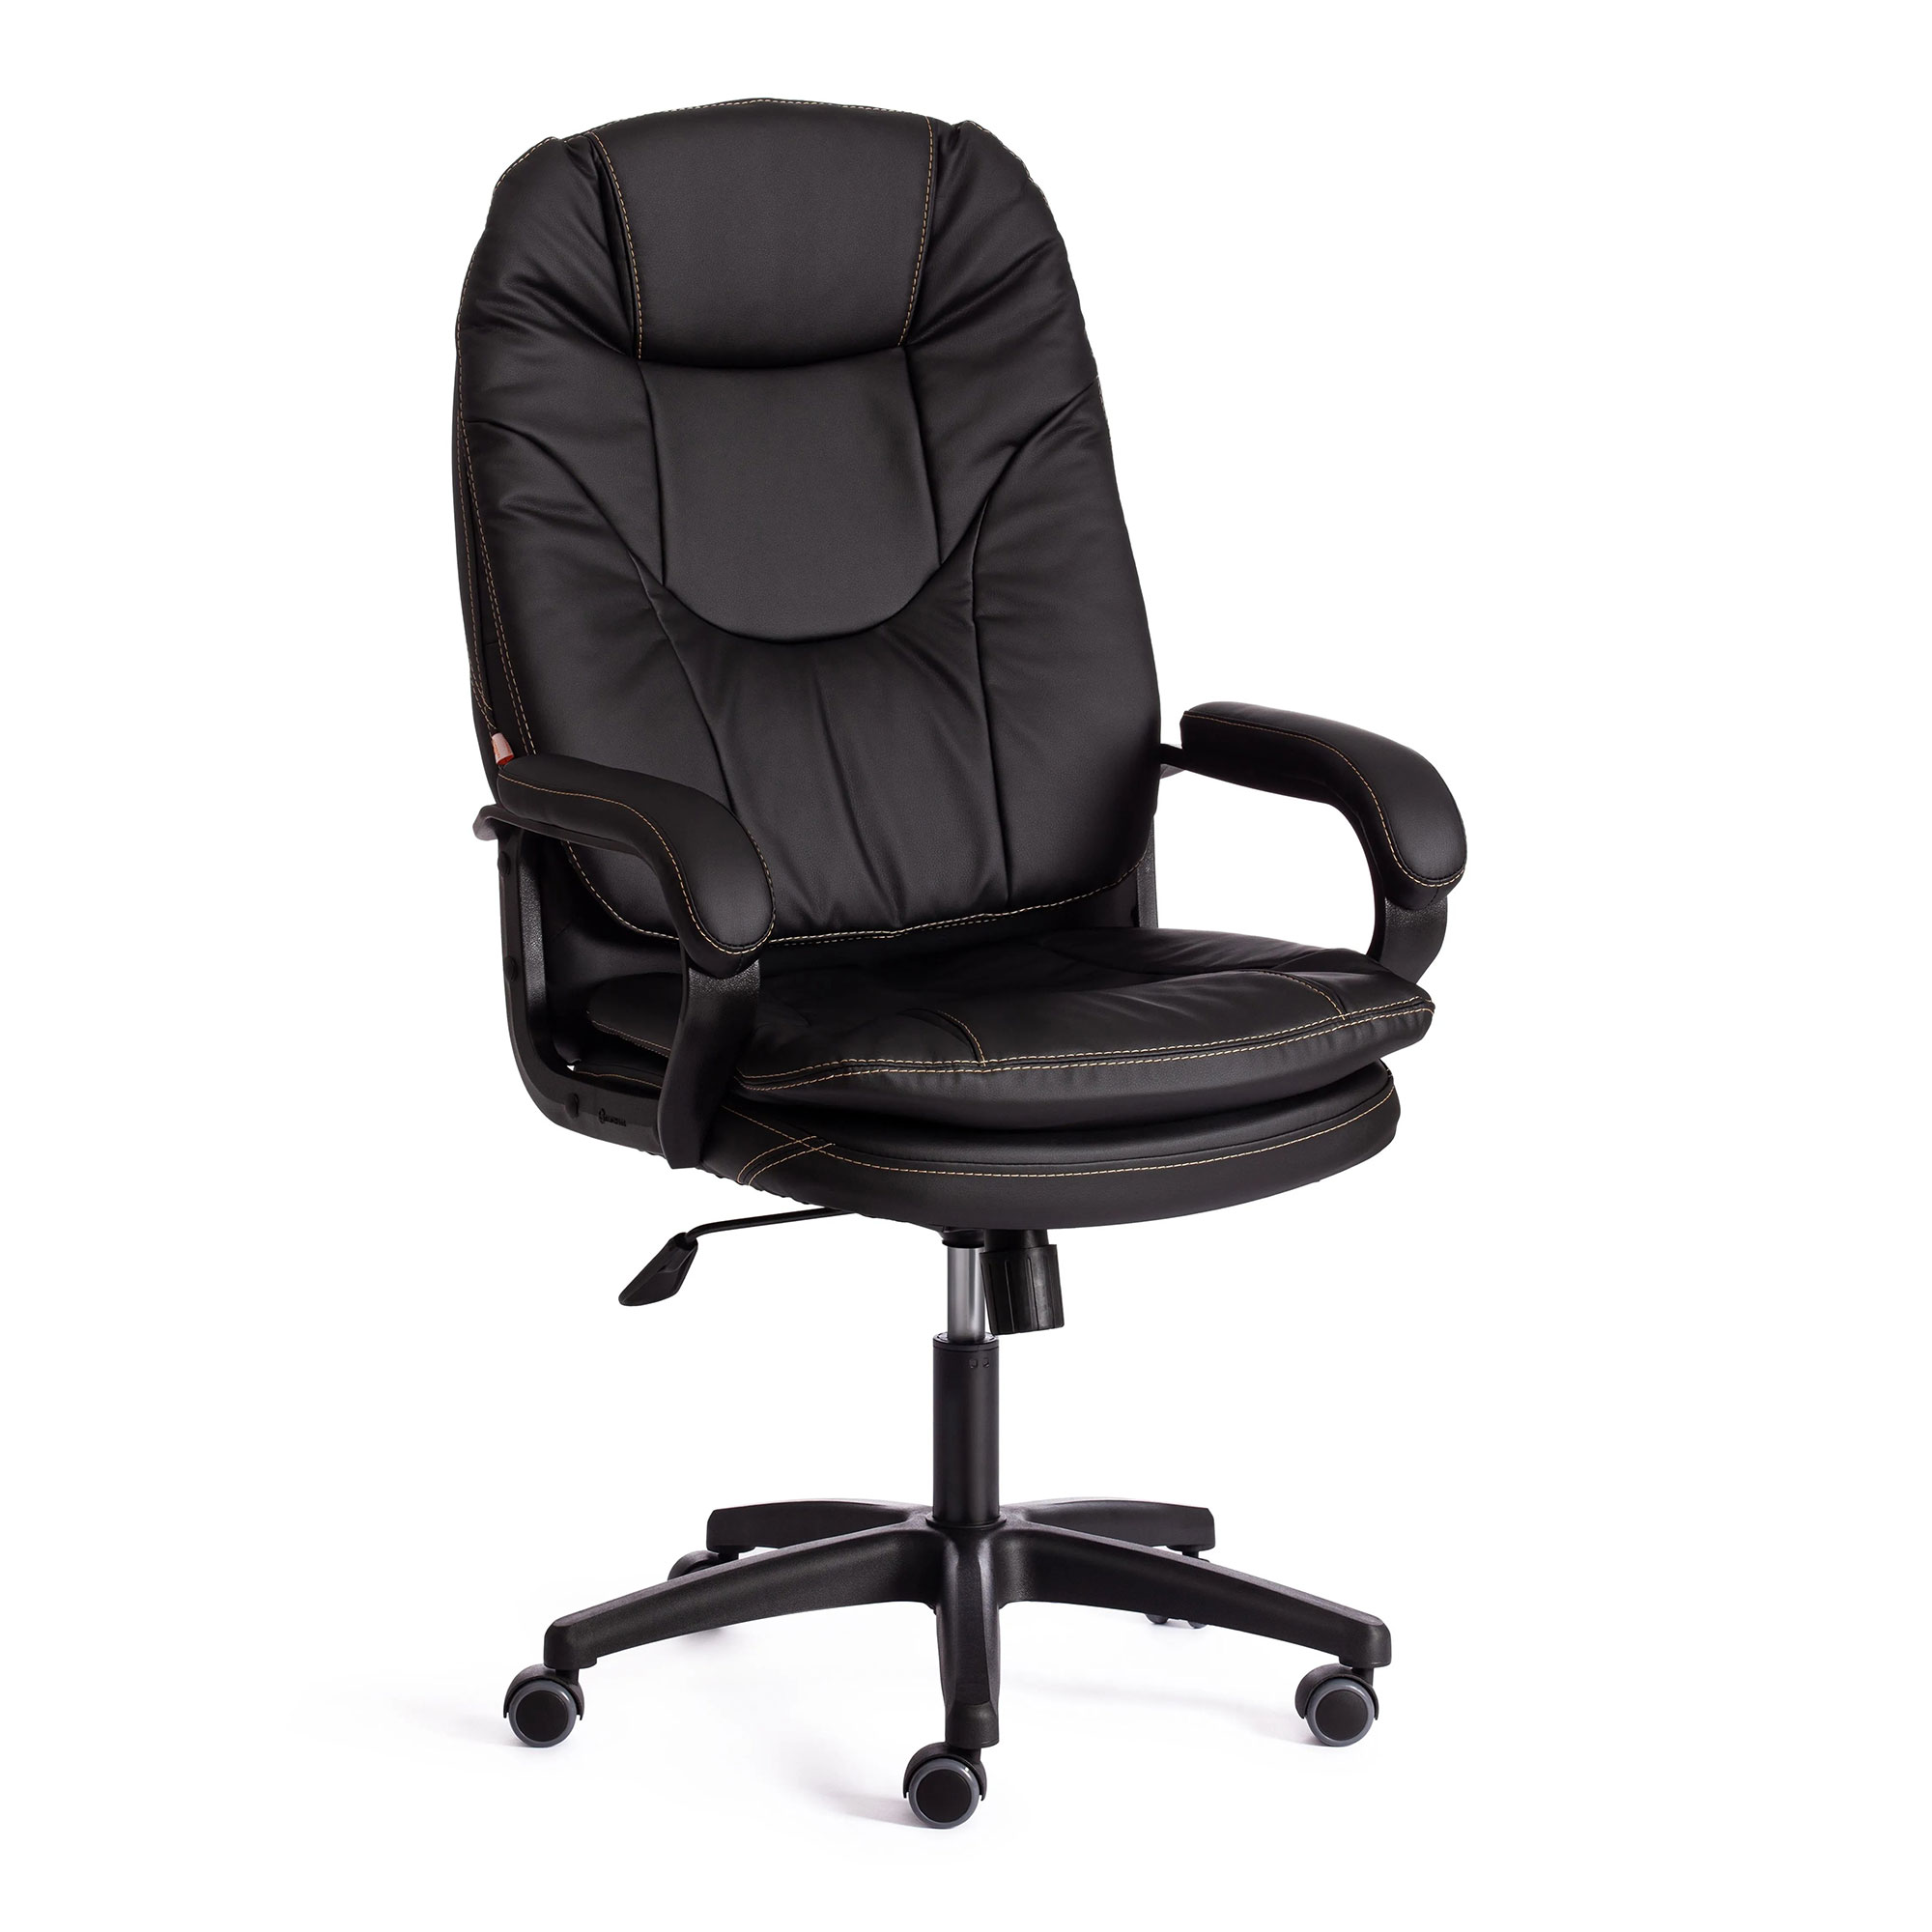 Компьютерное кресло TC Comfort чёрное 66х46х133 см (19382) кресло dreambag comfort коричневое экокожа 150x90 см